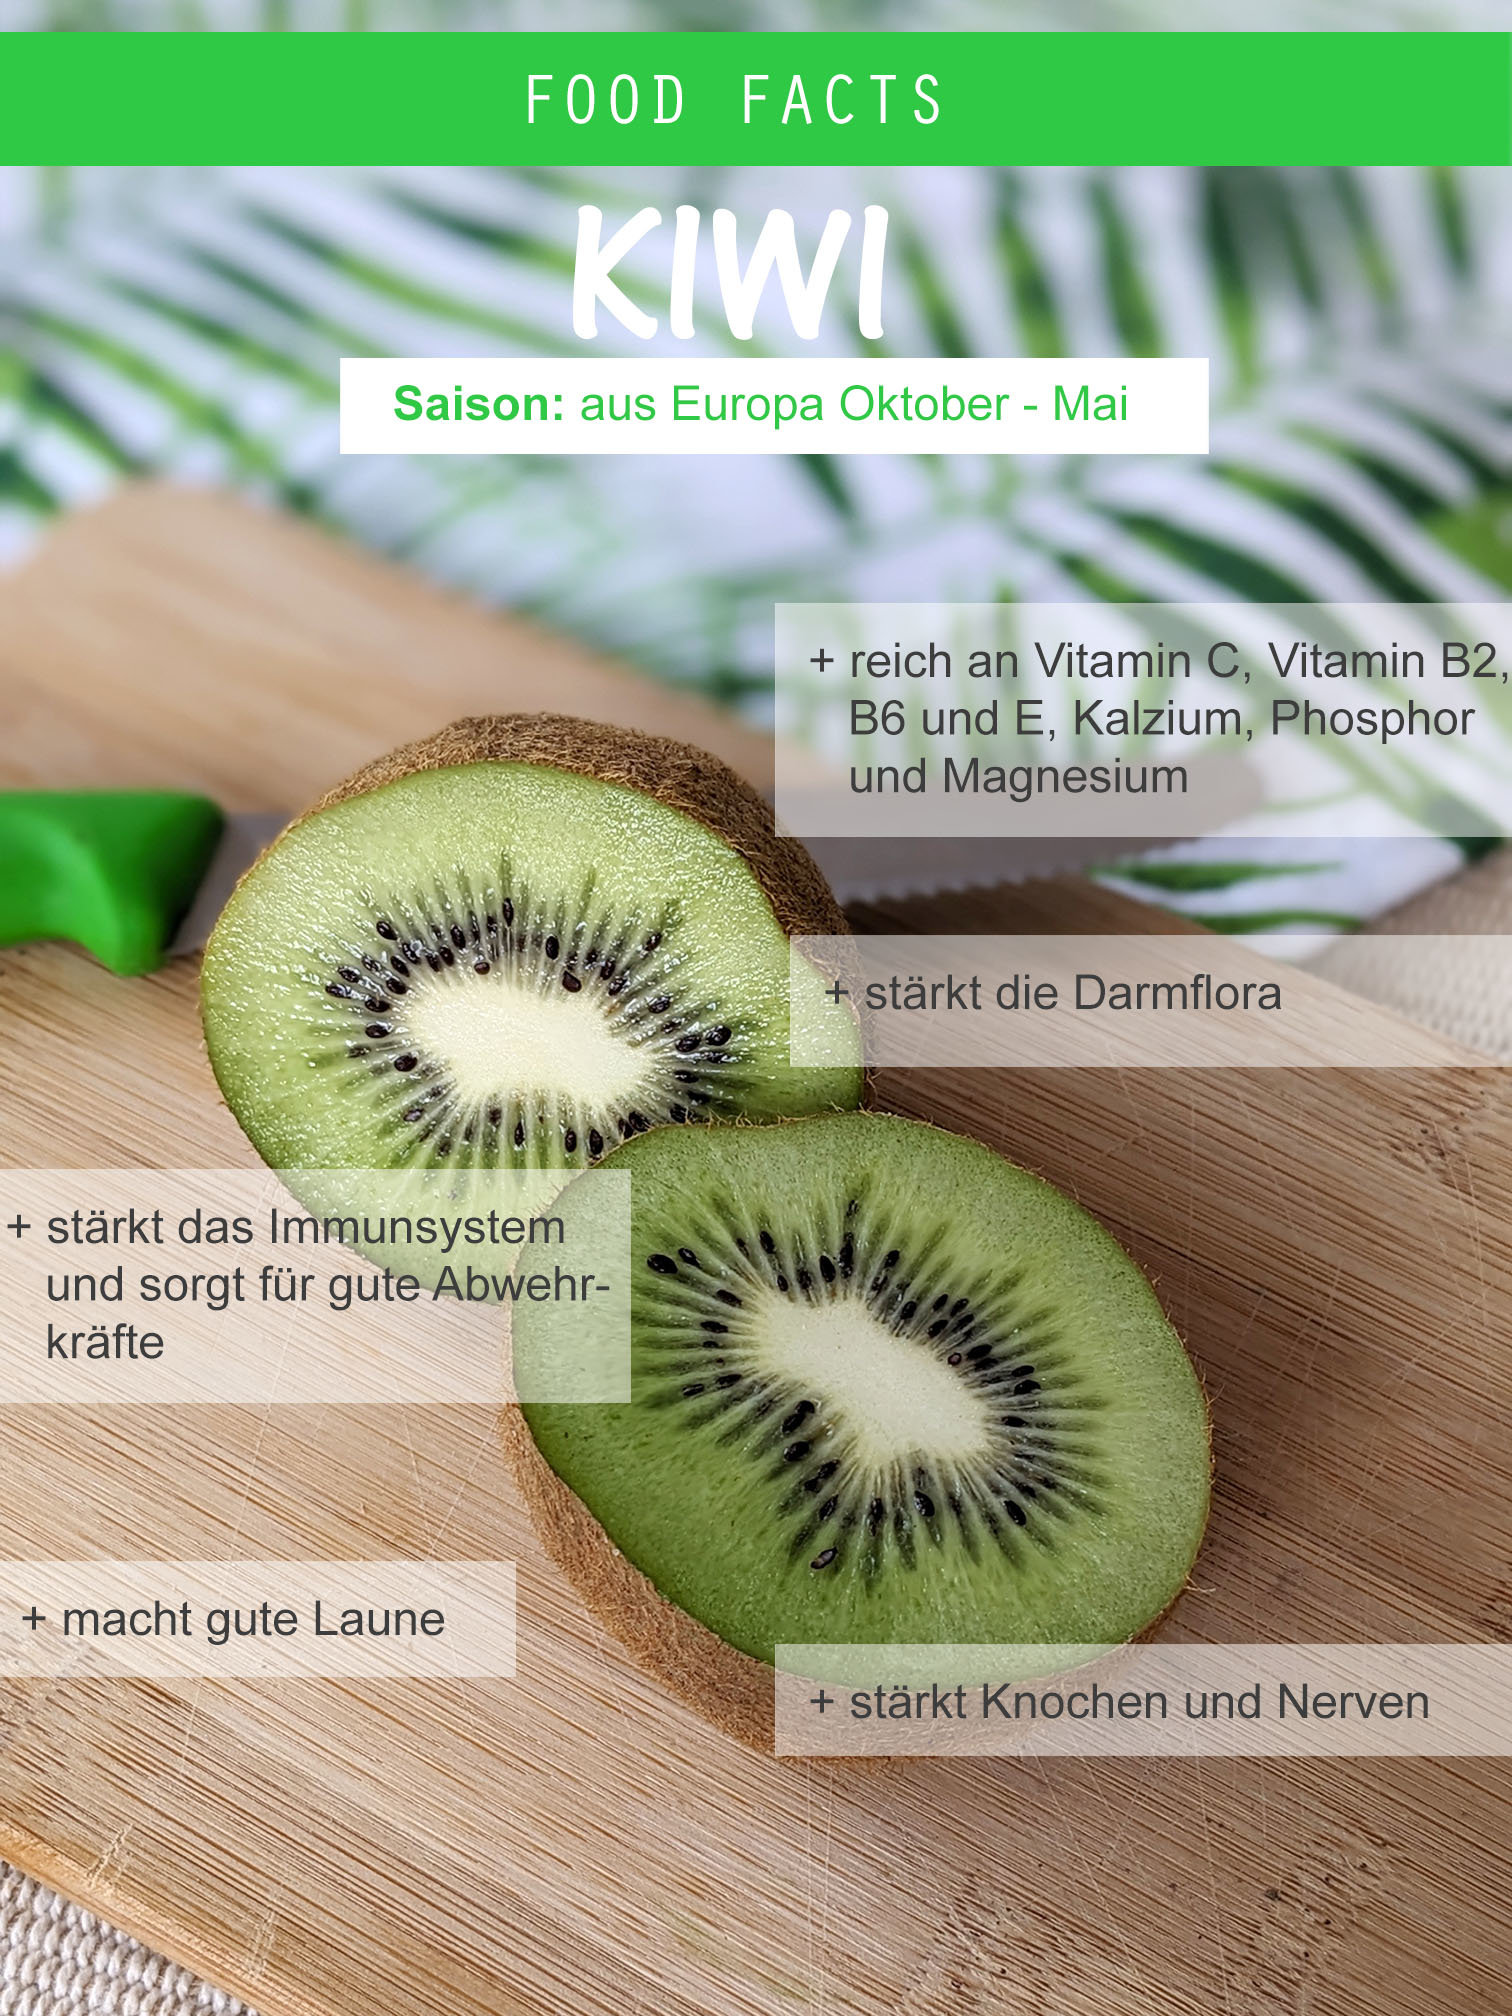 Food Facts Kiwi